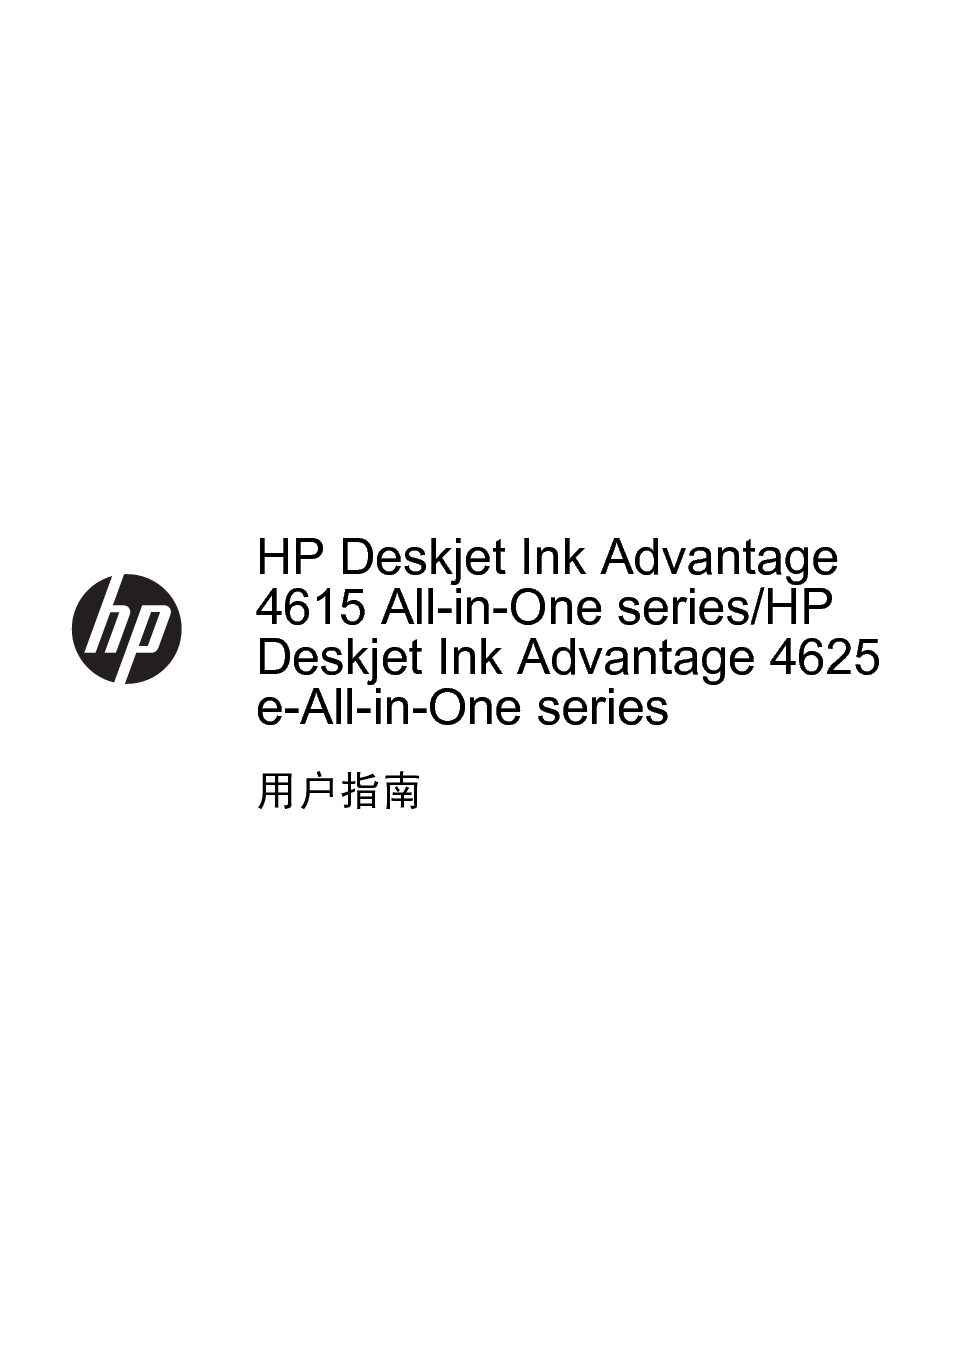 惠普 HP DeskJet Ink Advantage 4615 用户指南 第2页